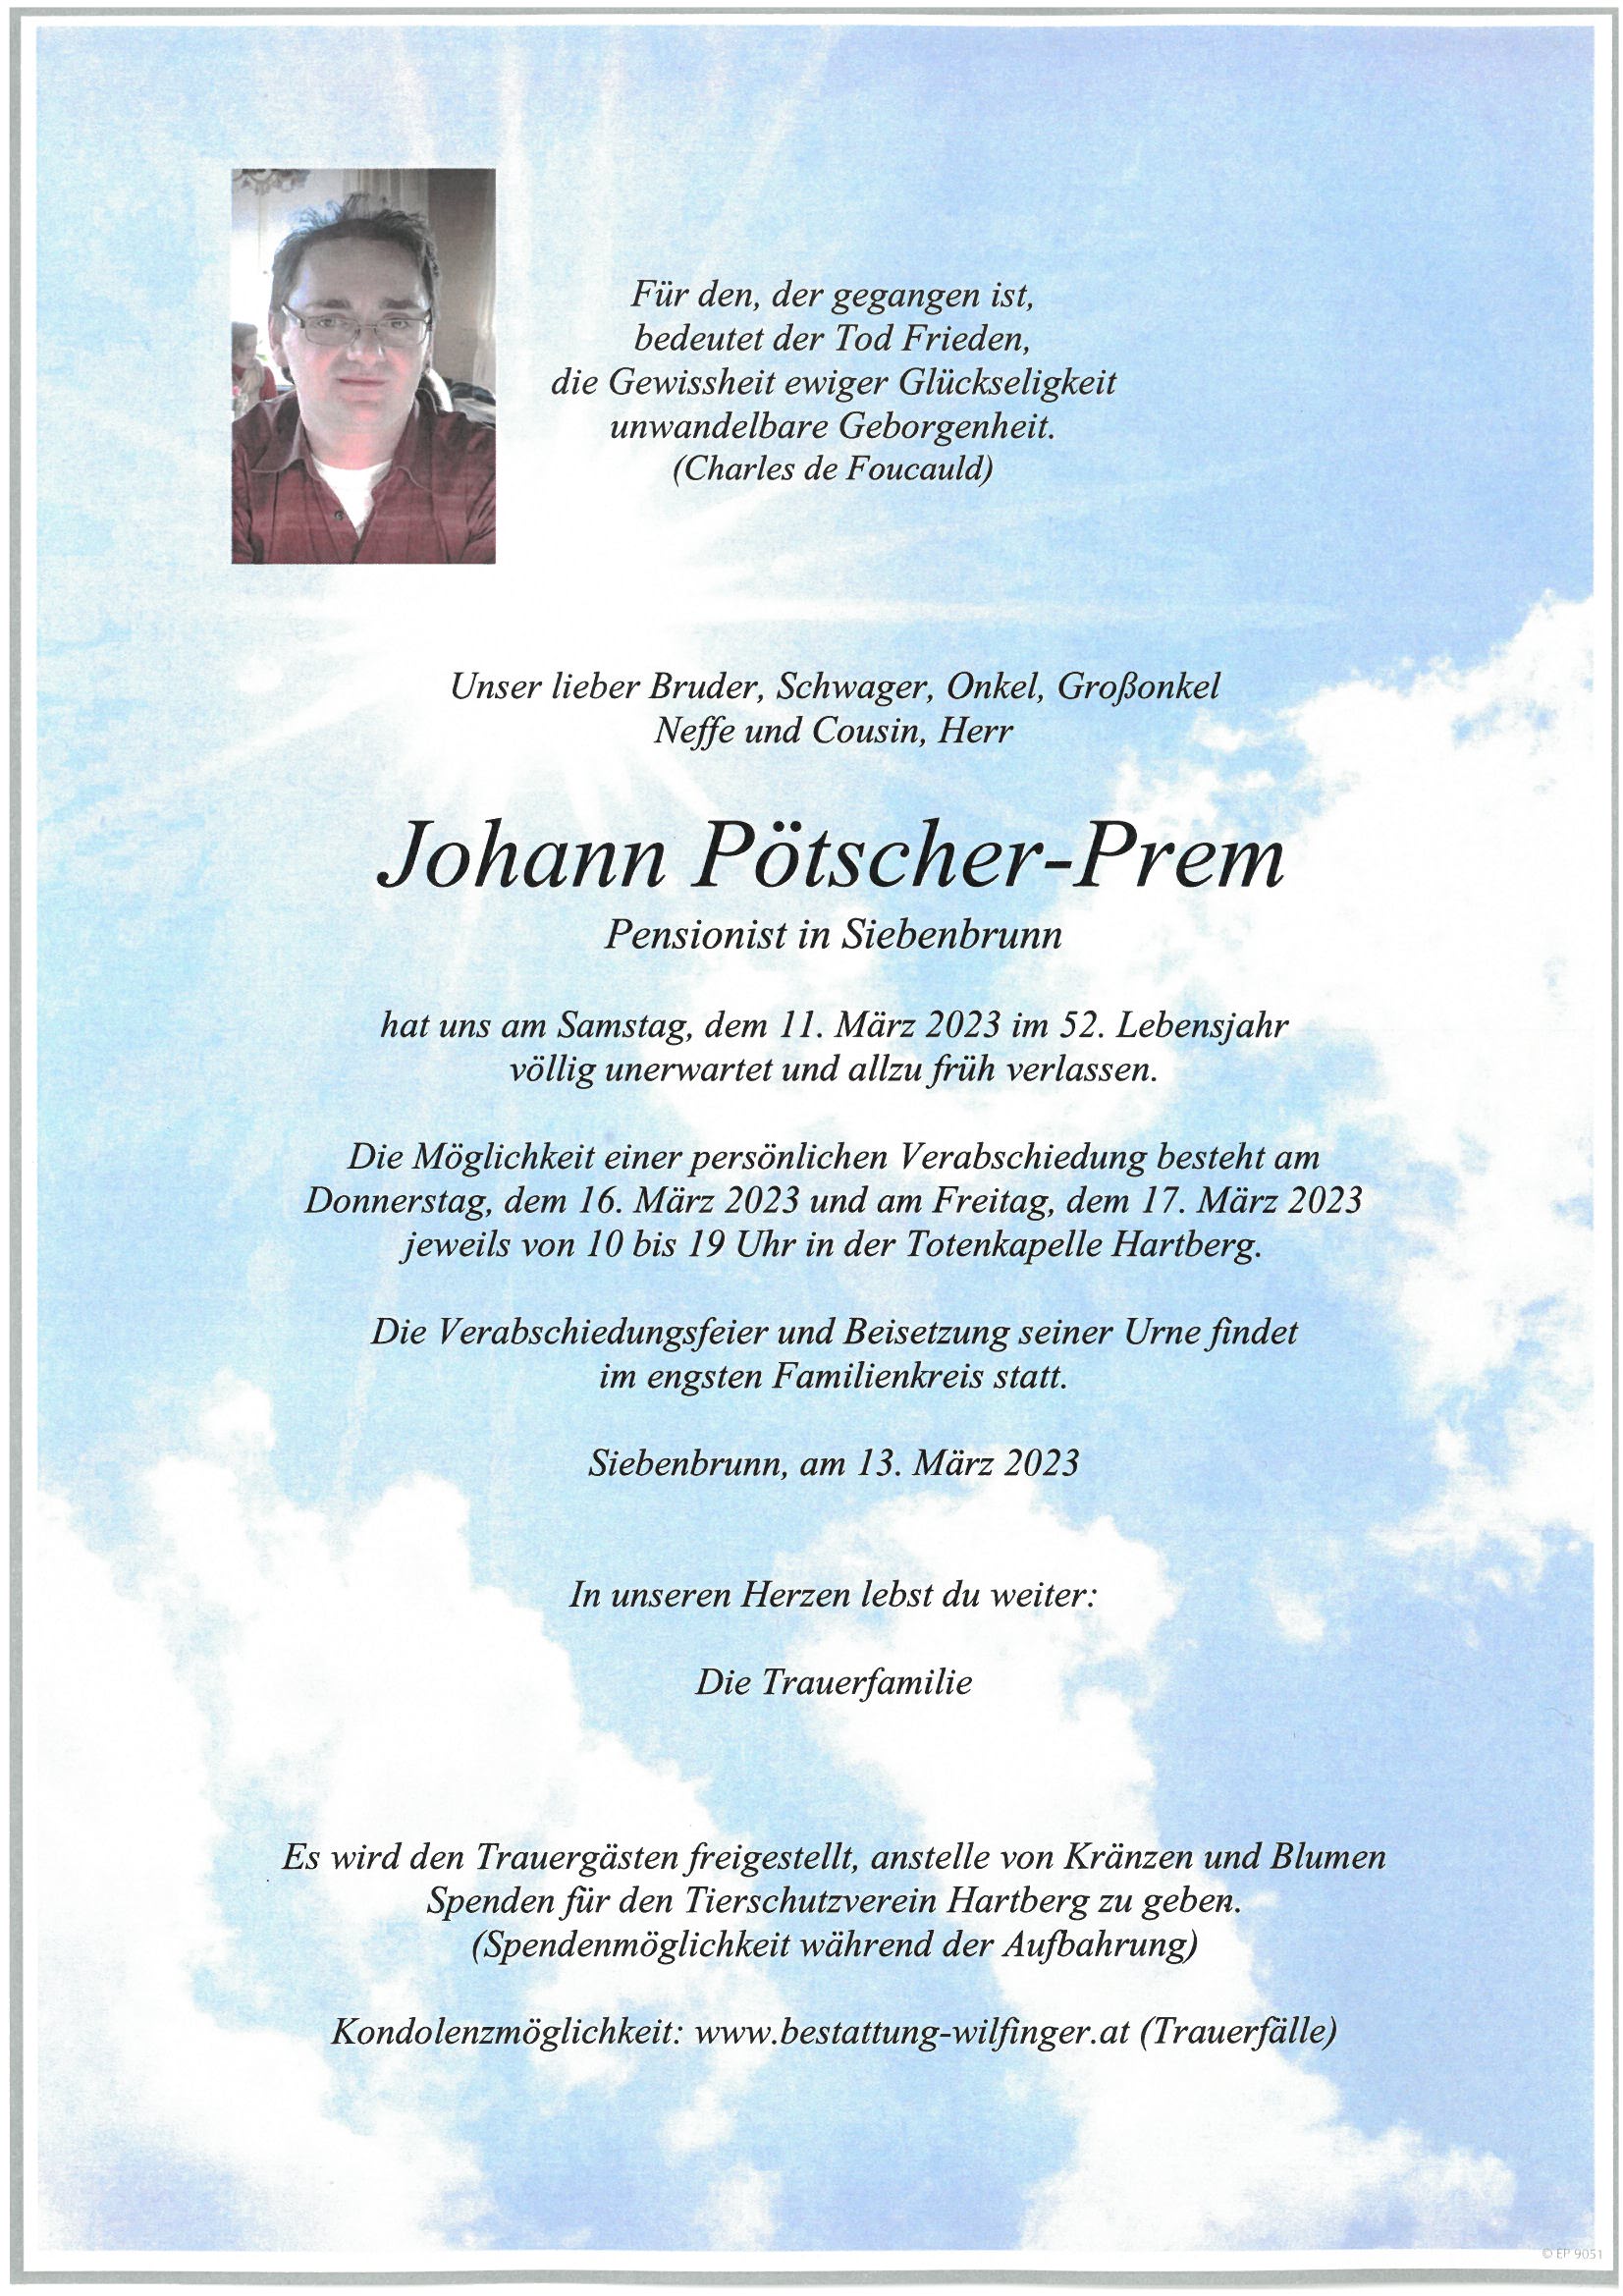 Johann Pötscher-Prem